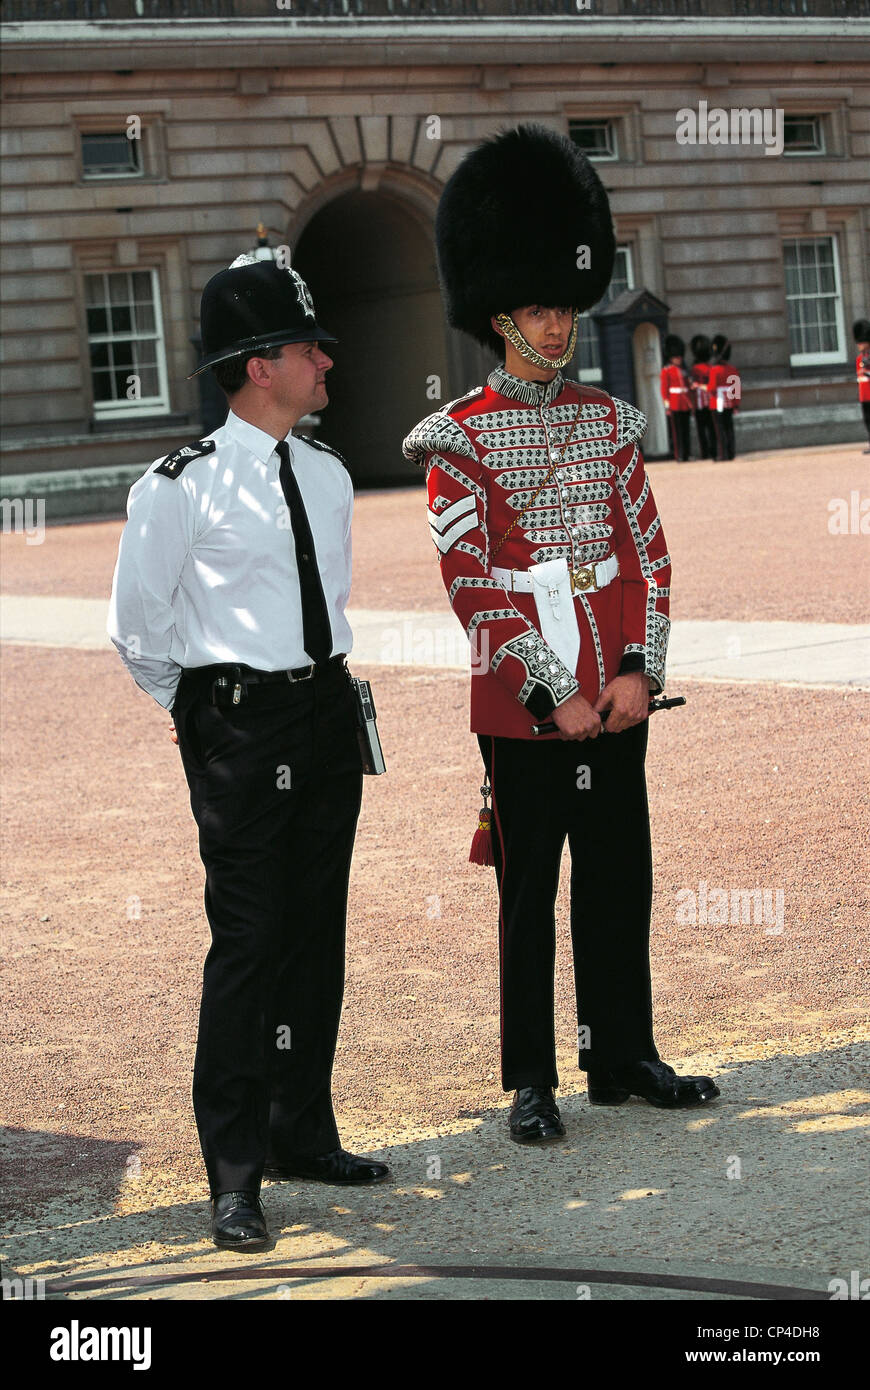 Royaume Uni - Angleterre - Londres, Buckingham Palace. Un garde et un policier. Banque D'Images